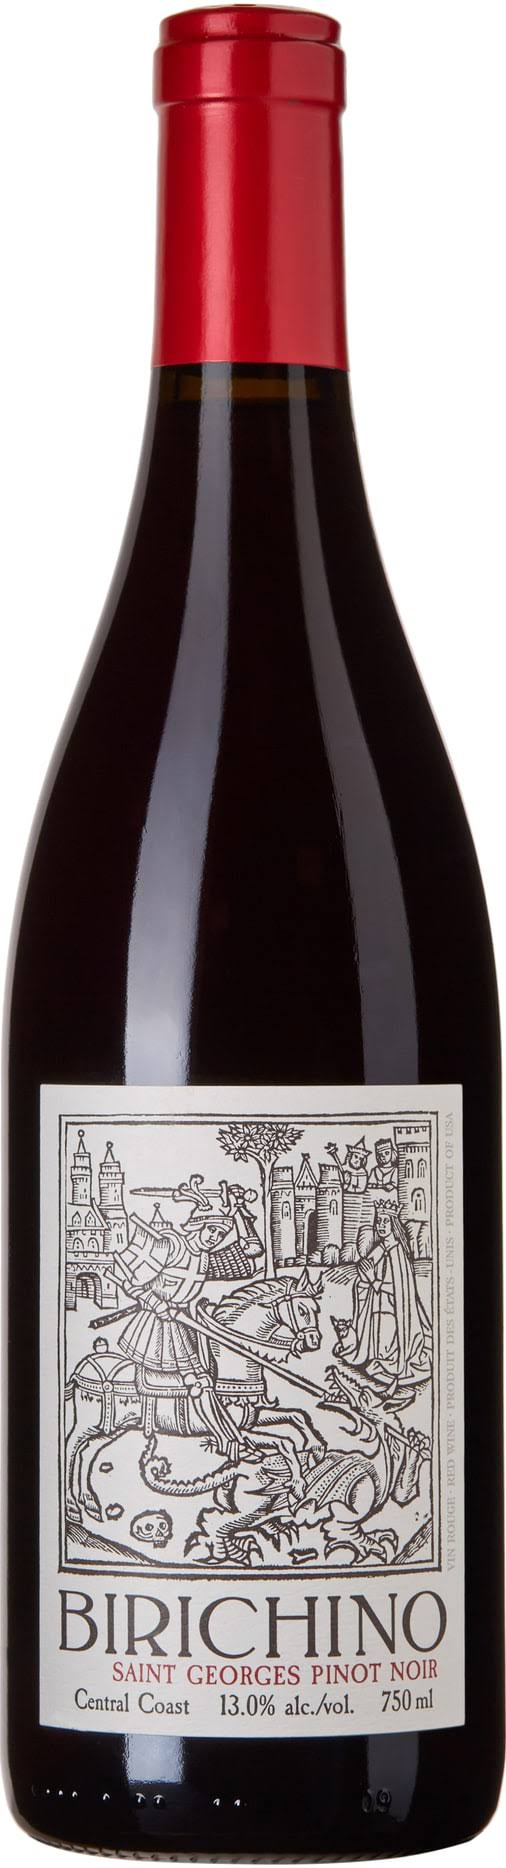 Birichino Saint Georges Pinot Noir 6